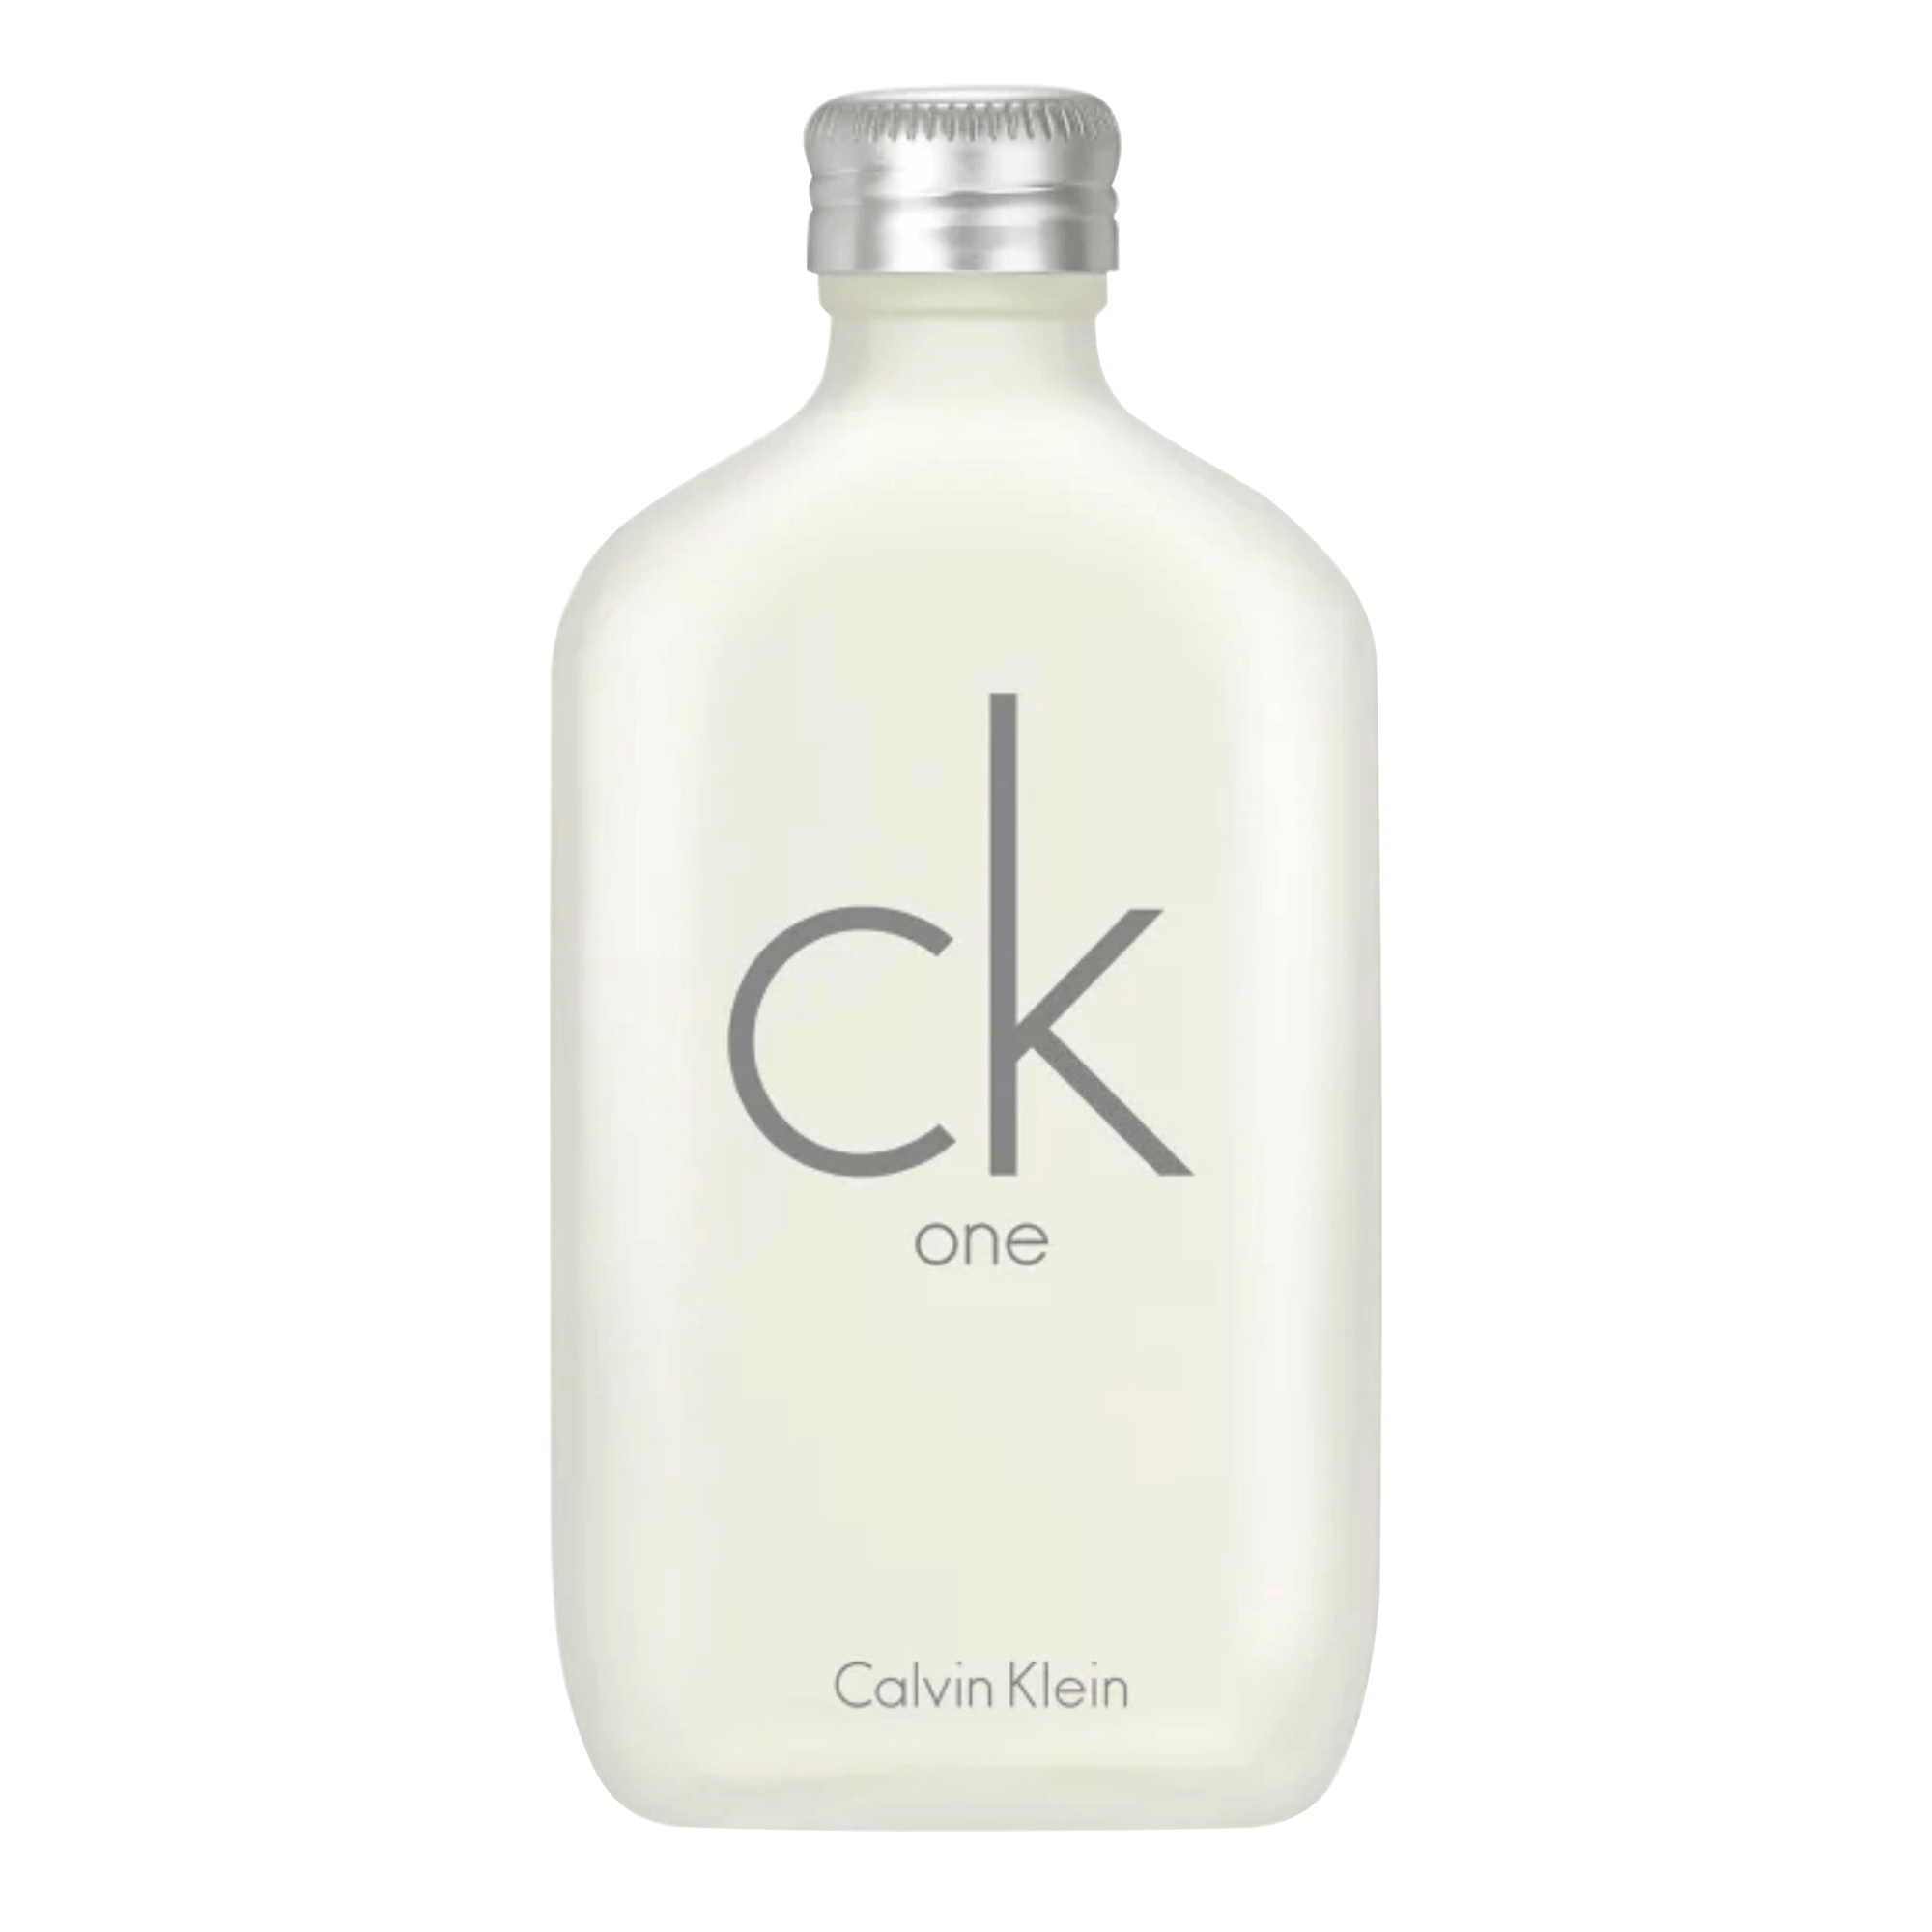 Ck One De Calvin Klein Eau De Toilette Perfume Unissex 100 Ml